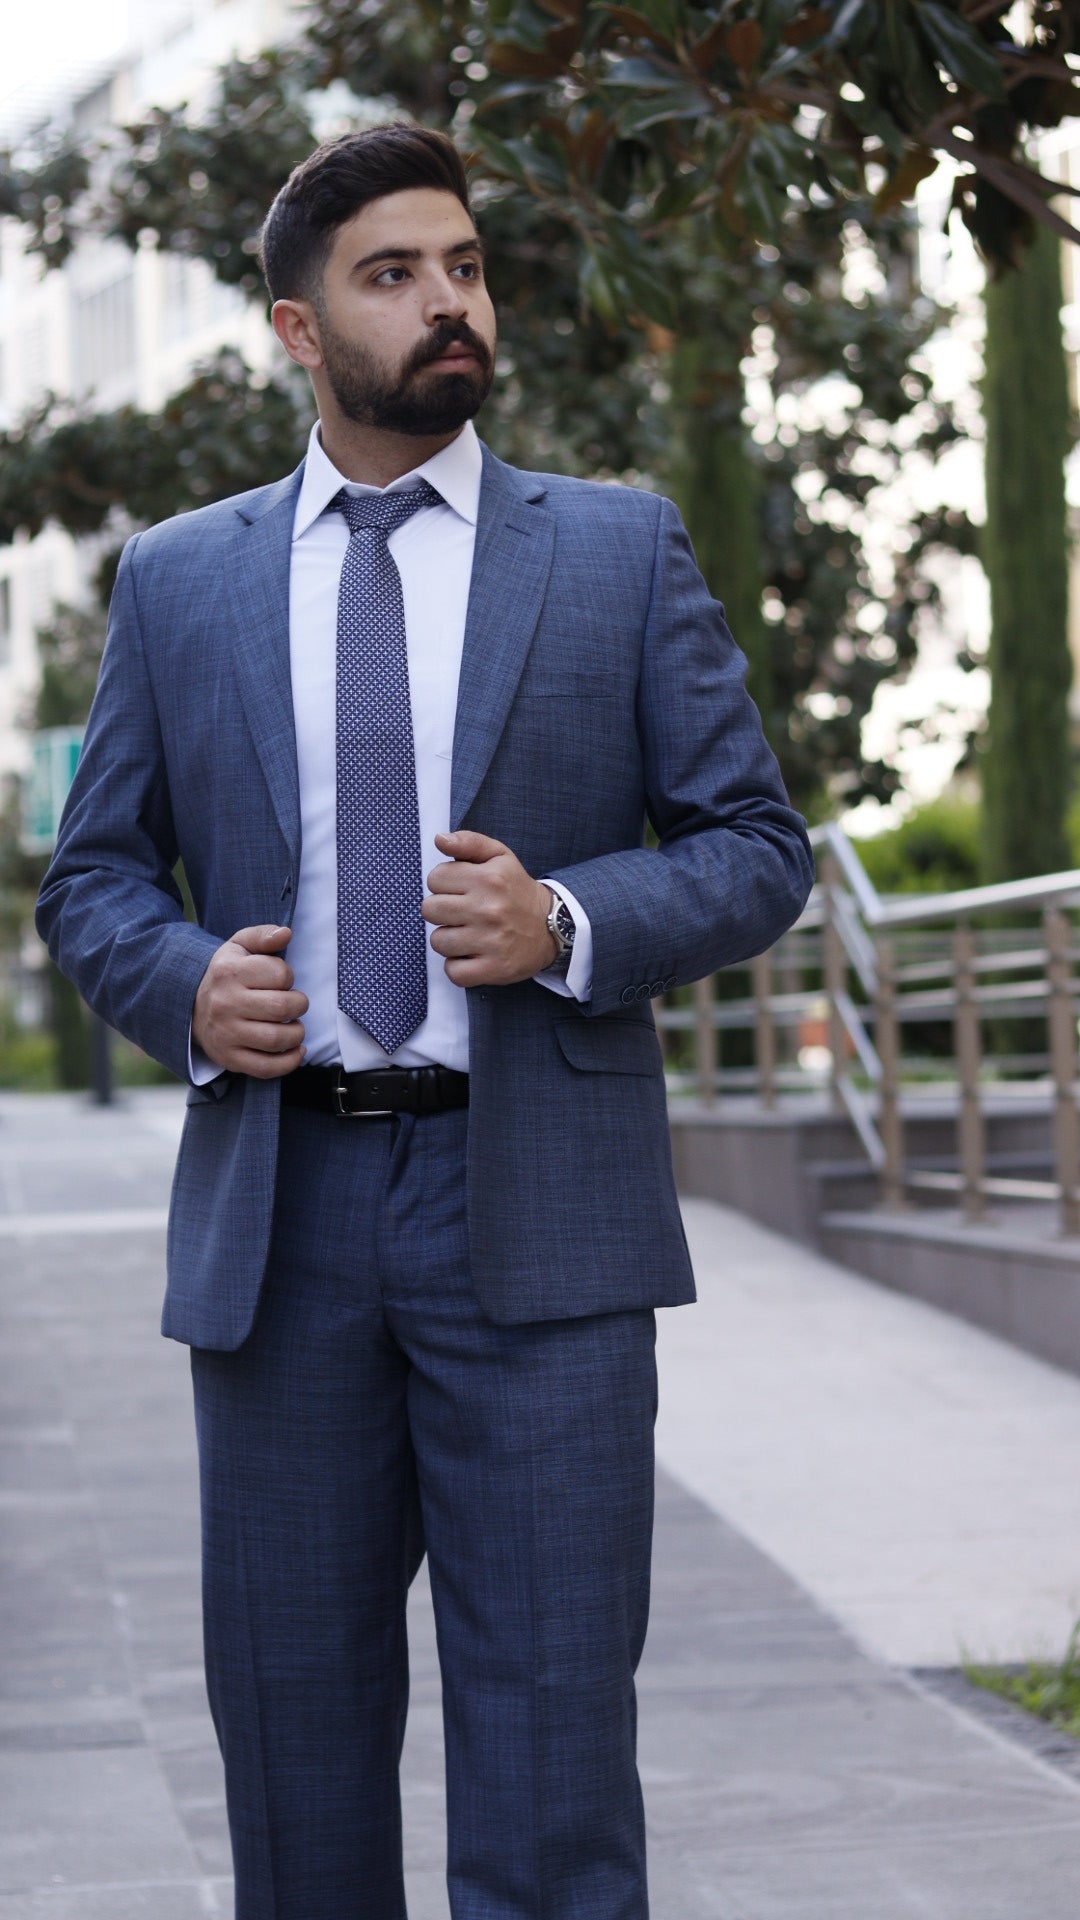 The Confident Suit - High Quality Men's Suit